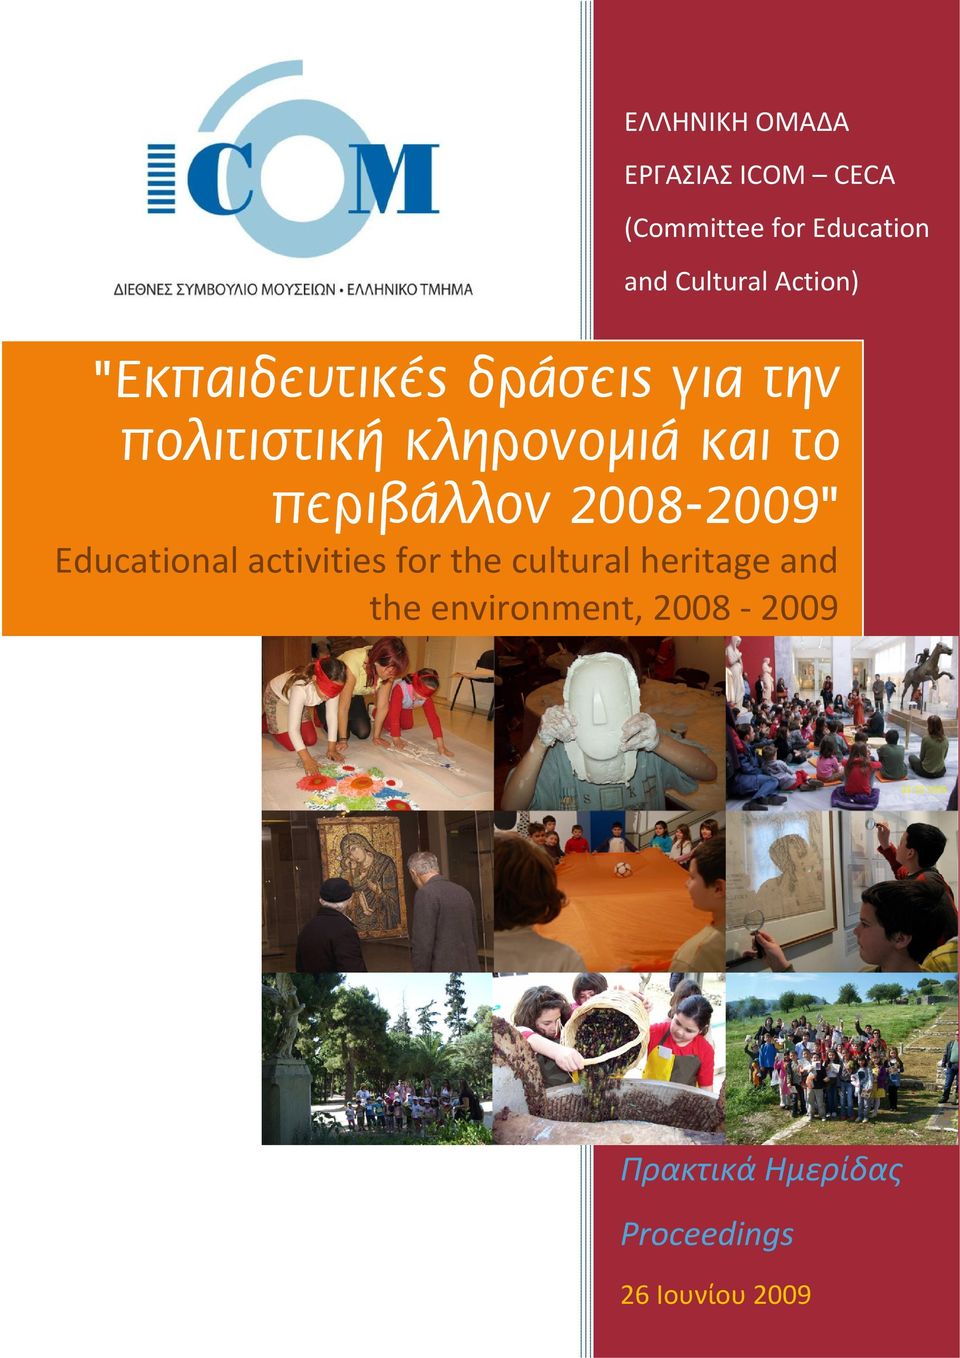 περιβάλλον 2008-2009" Educational activities for the cultural heritage